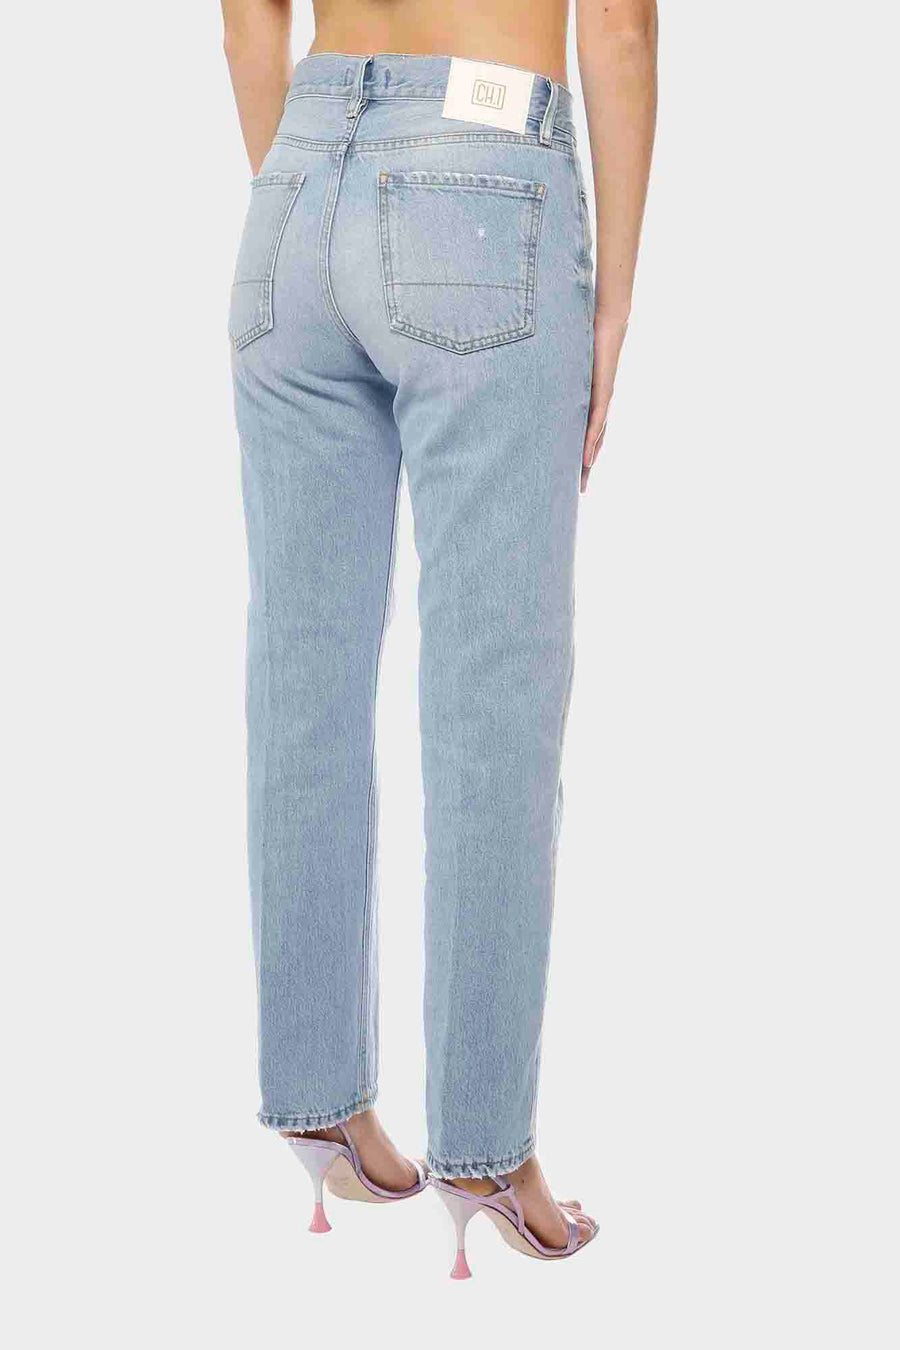 Pantalone True Nyc da donna in  jeans lavaggio chiaro ci gingy